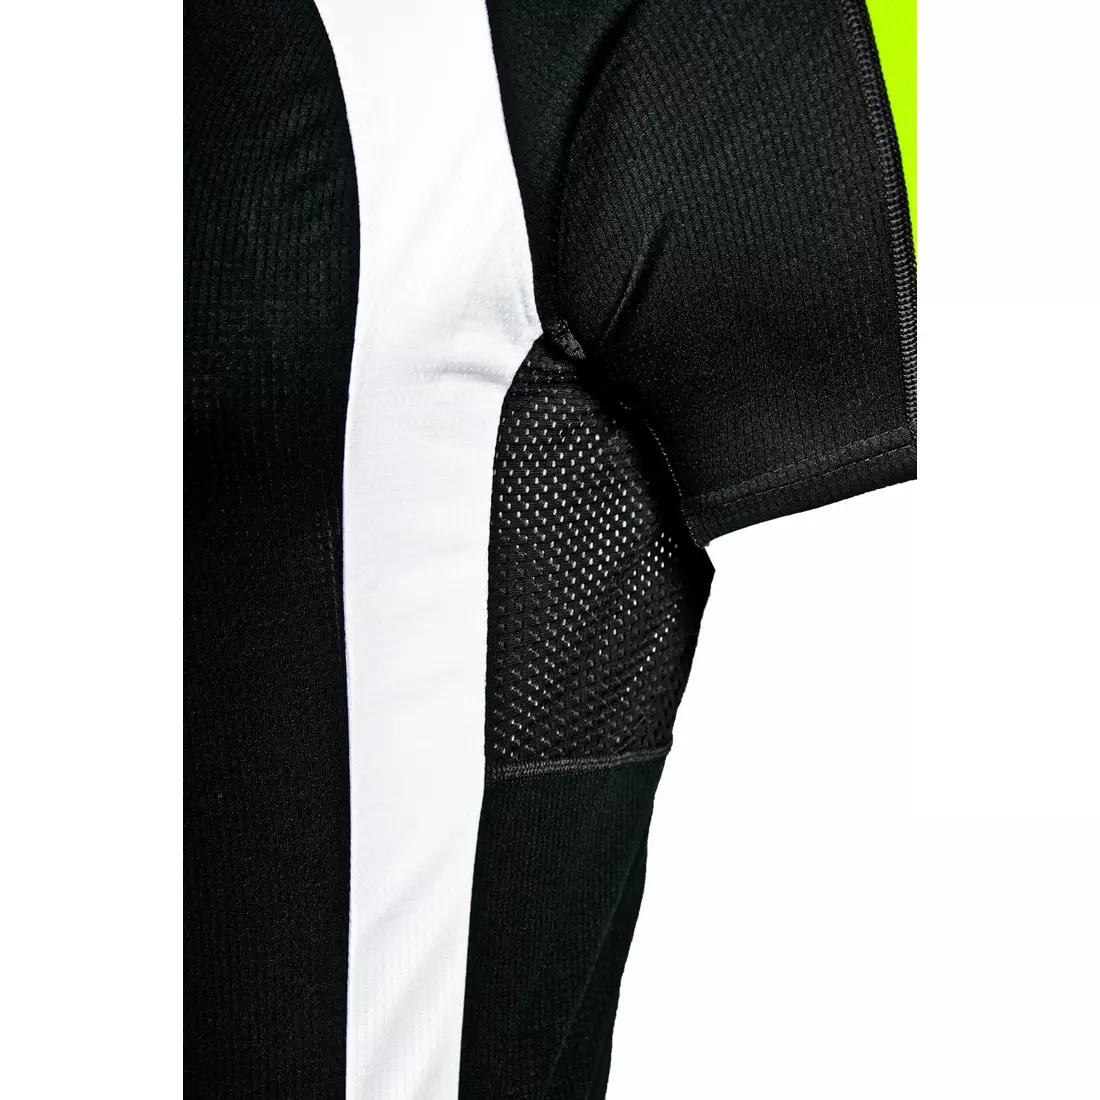 DEKO AIR X2 pánský cyklistický dres, černo-fluor